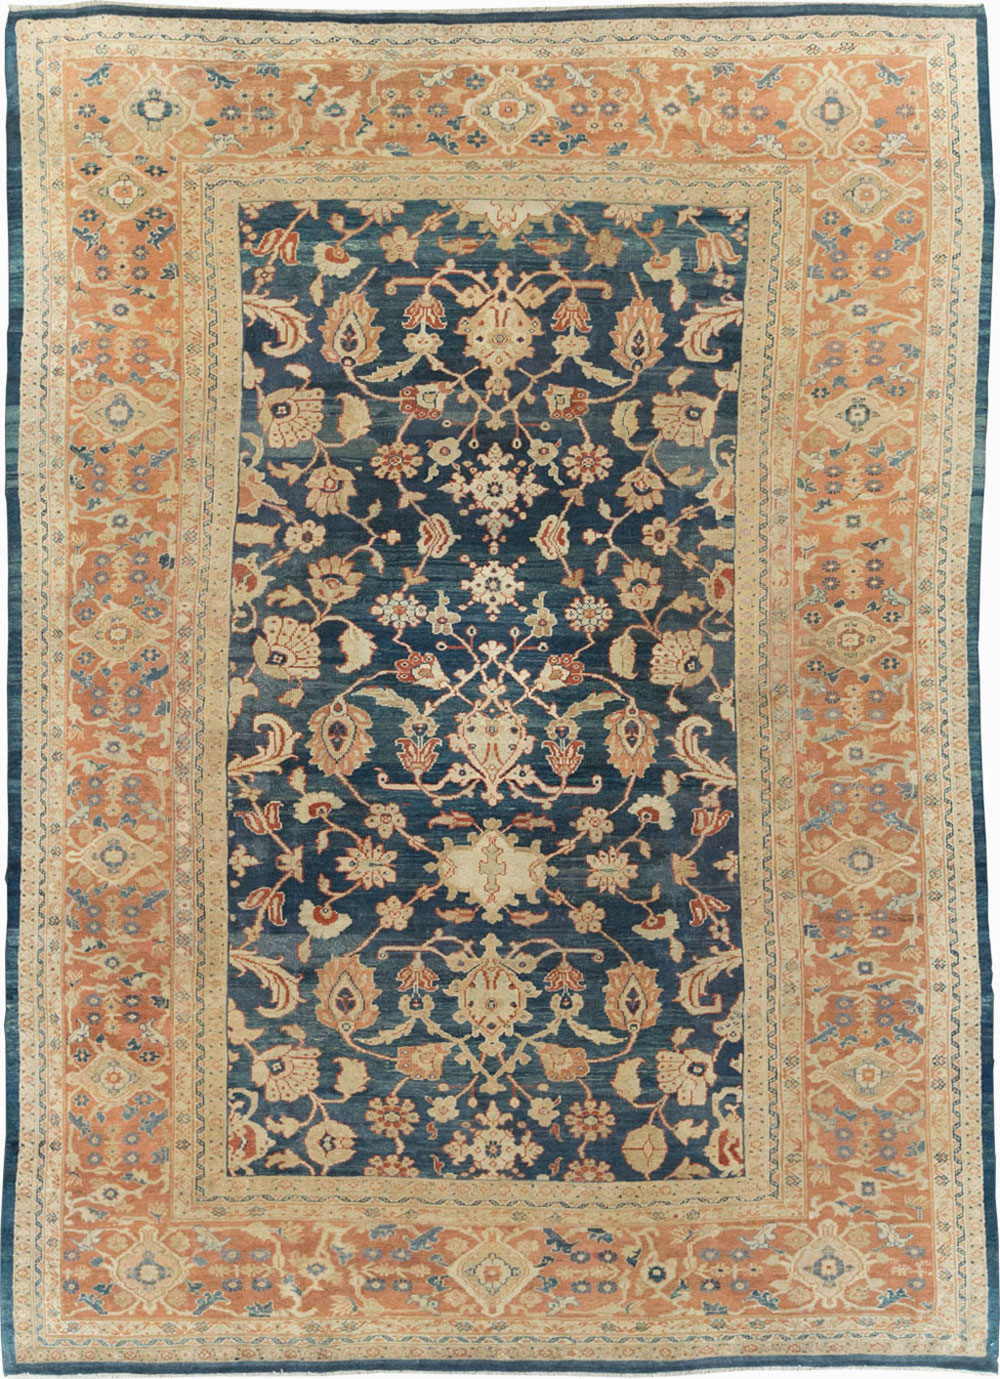 Antique sultan abad Carpet - # 55874